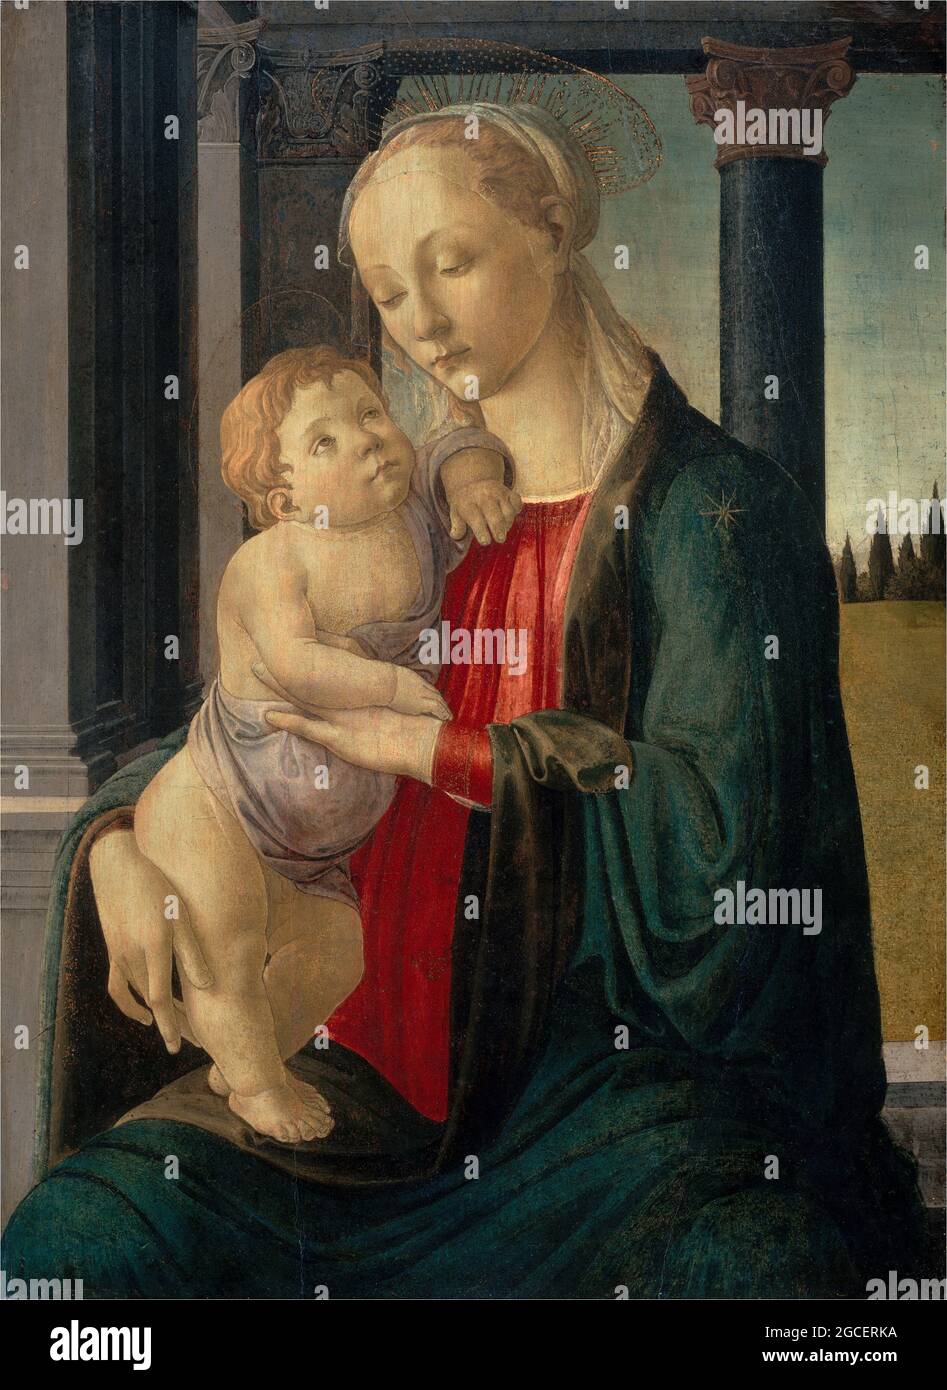 Titolo: Madonna col Bambino Creatore: Sandro Botticelli Data: c. 1470 Medio: Tempera su pannello dimensioni: 74.5 x 54.5 cm Ubicazione: Galleria Nazionale Foto Stock